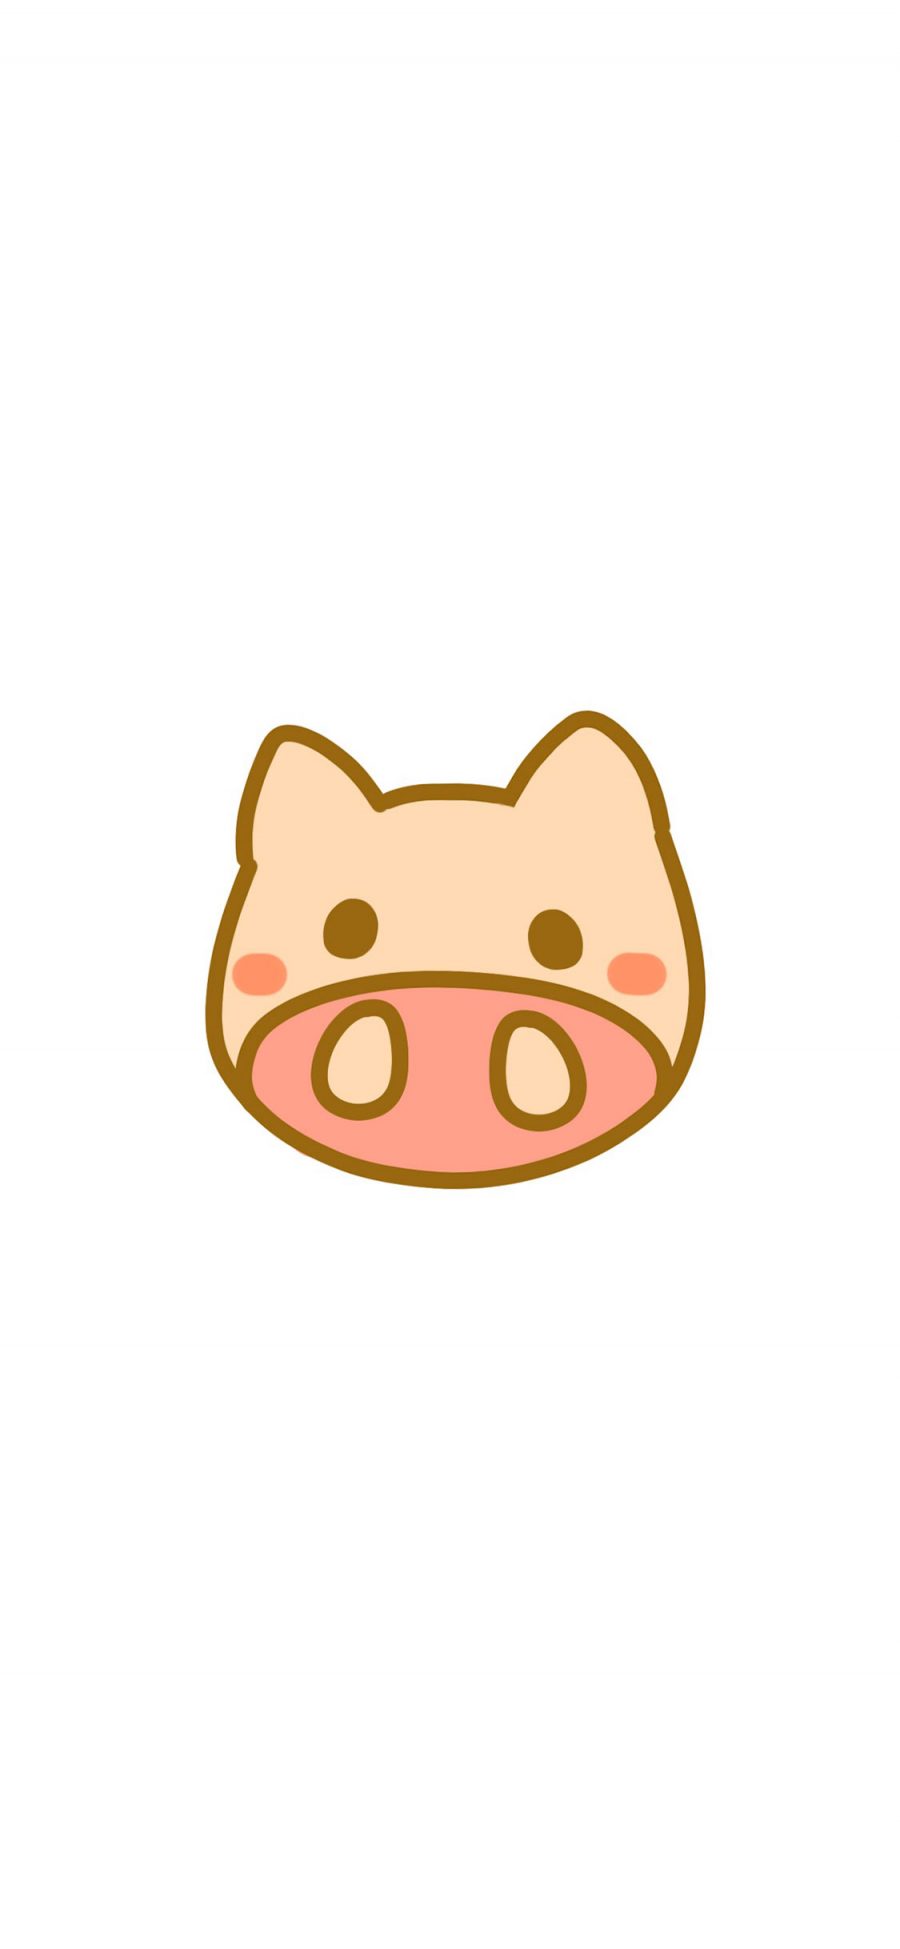 [2436×1125]猪 卡通 简笔 可爱 动物 萌 苹果手机动漫壁纸图片